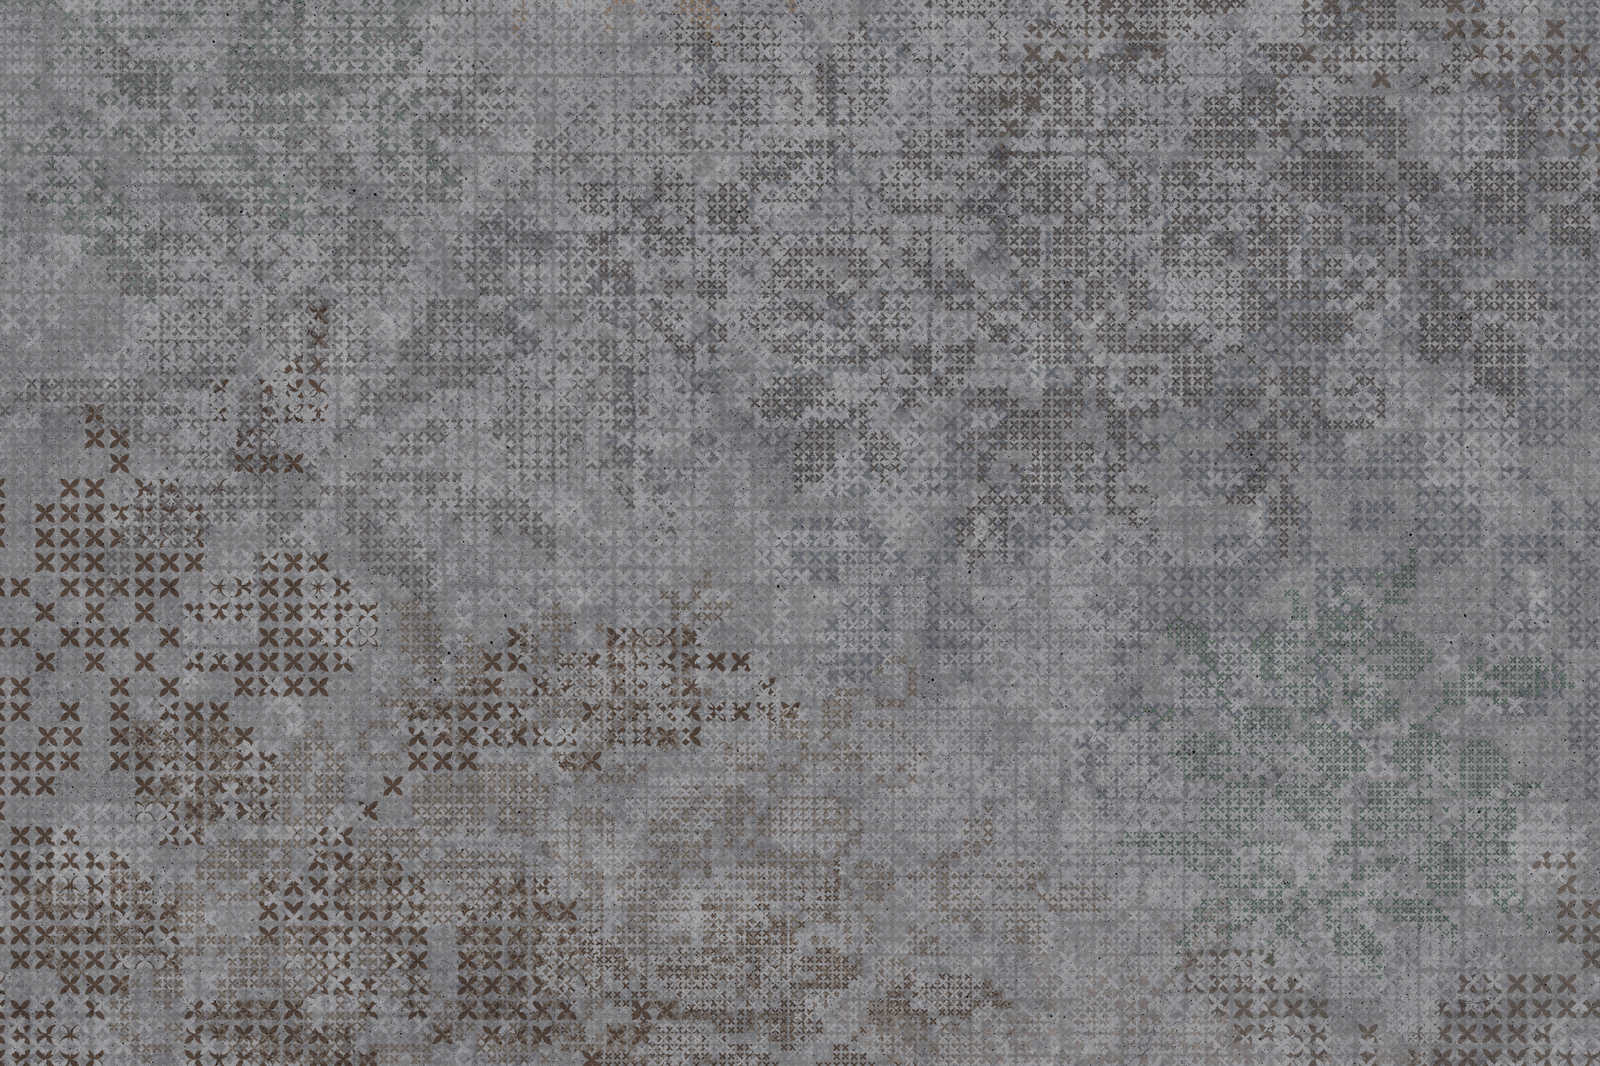             Toile Croix Motif style pixel - 1,20 m x 0,80 m
        